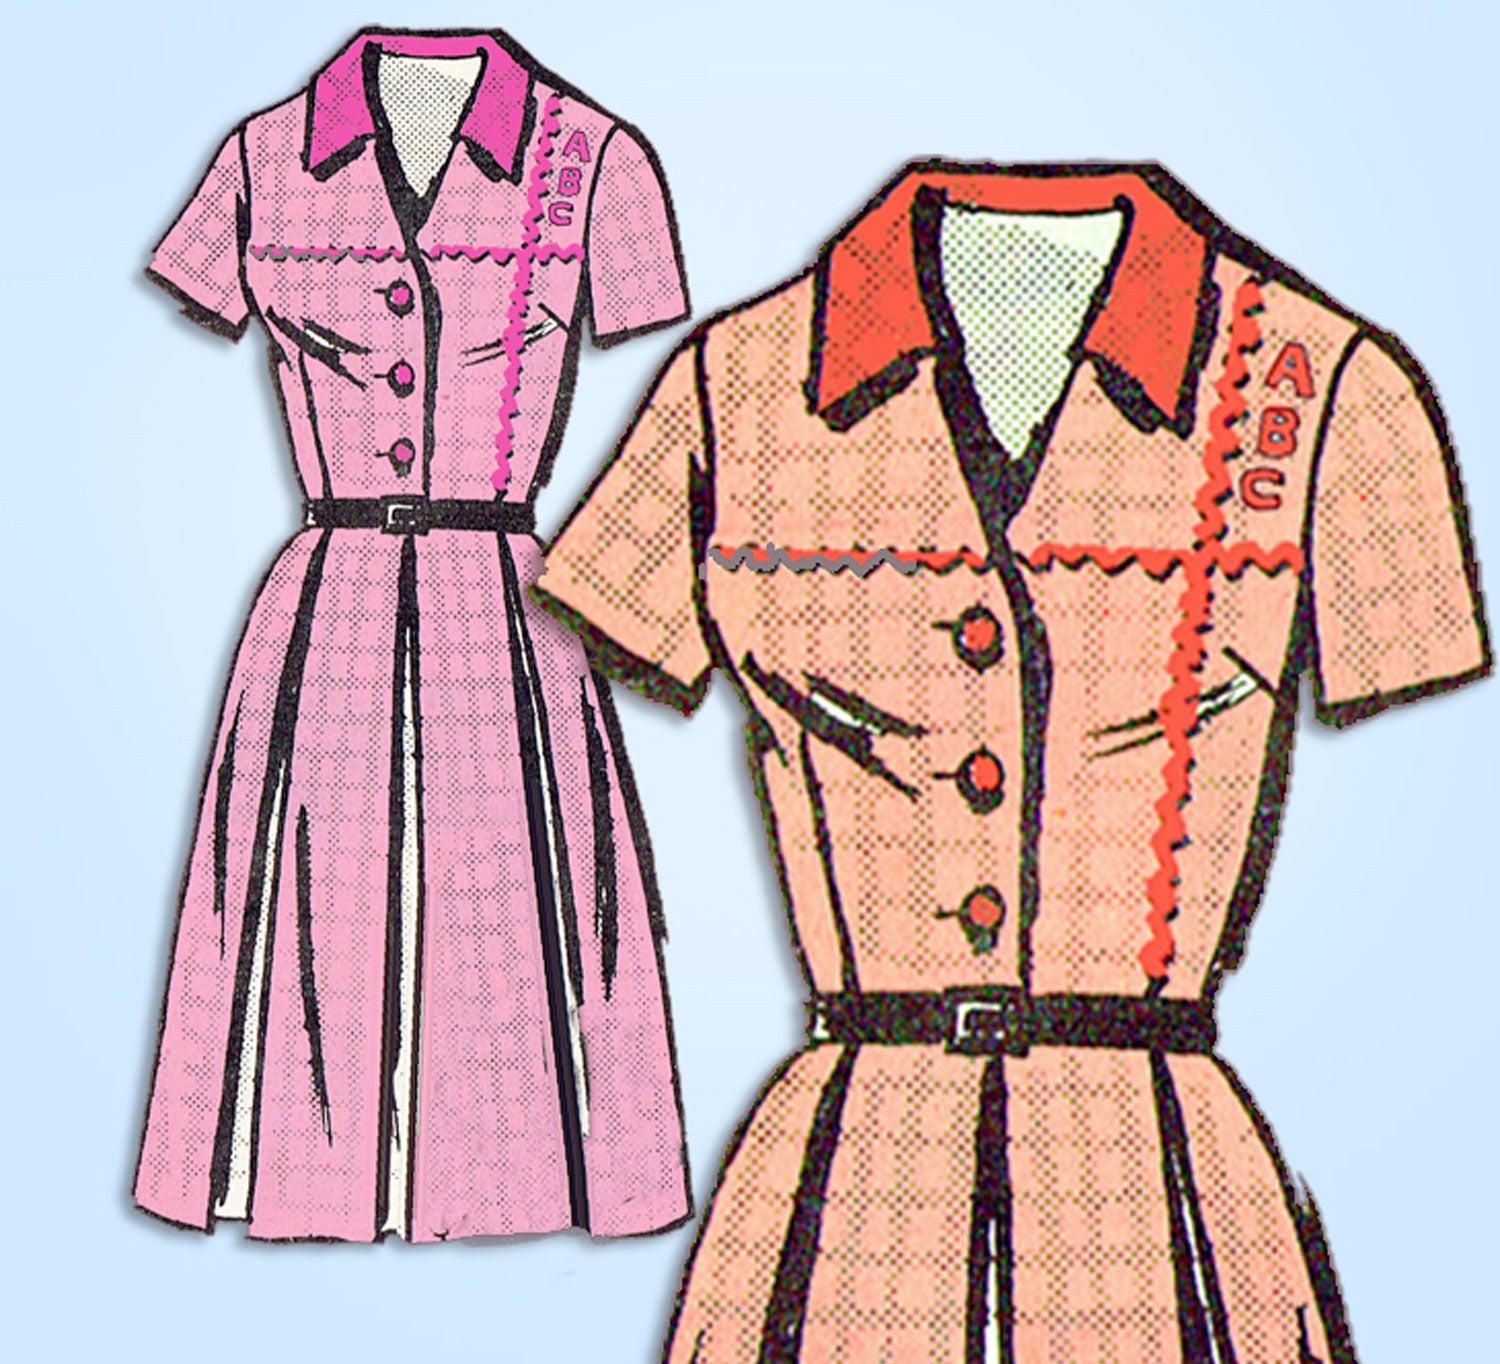 shirtwaist dress 1960s